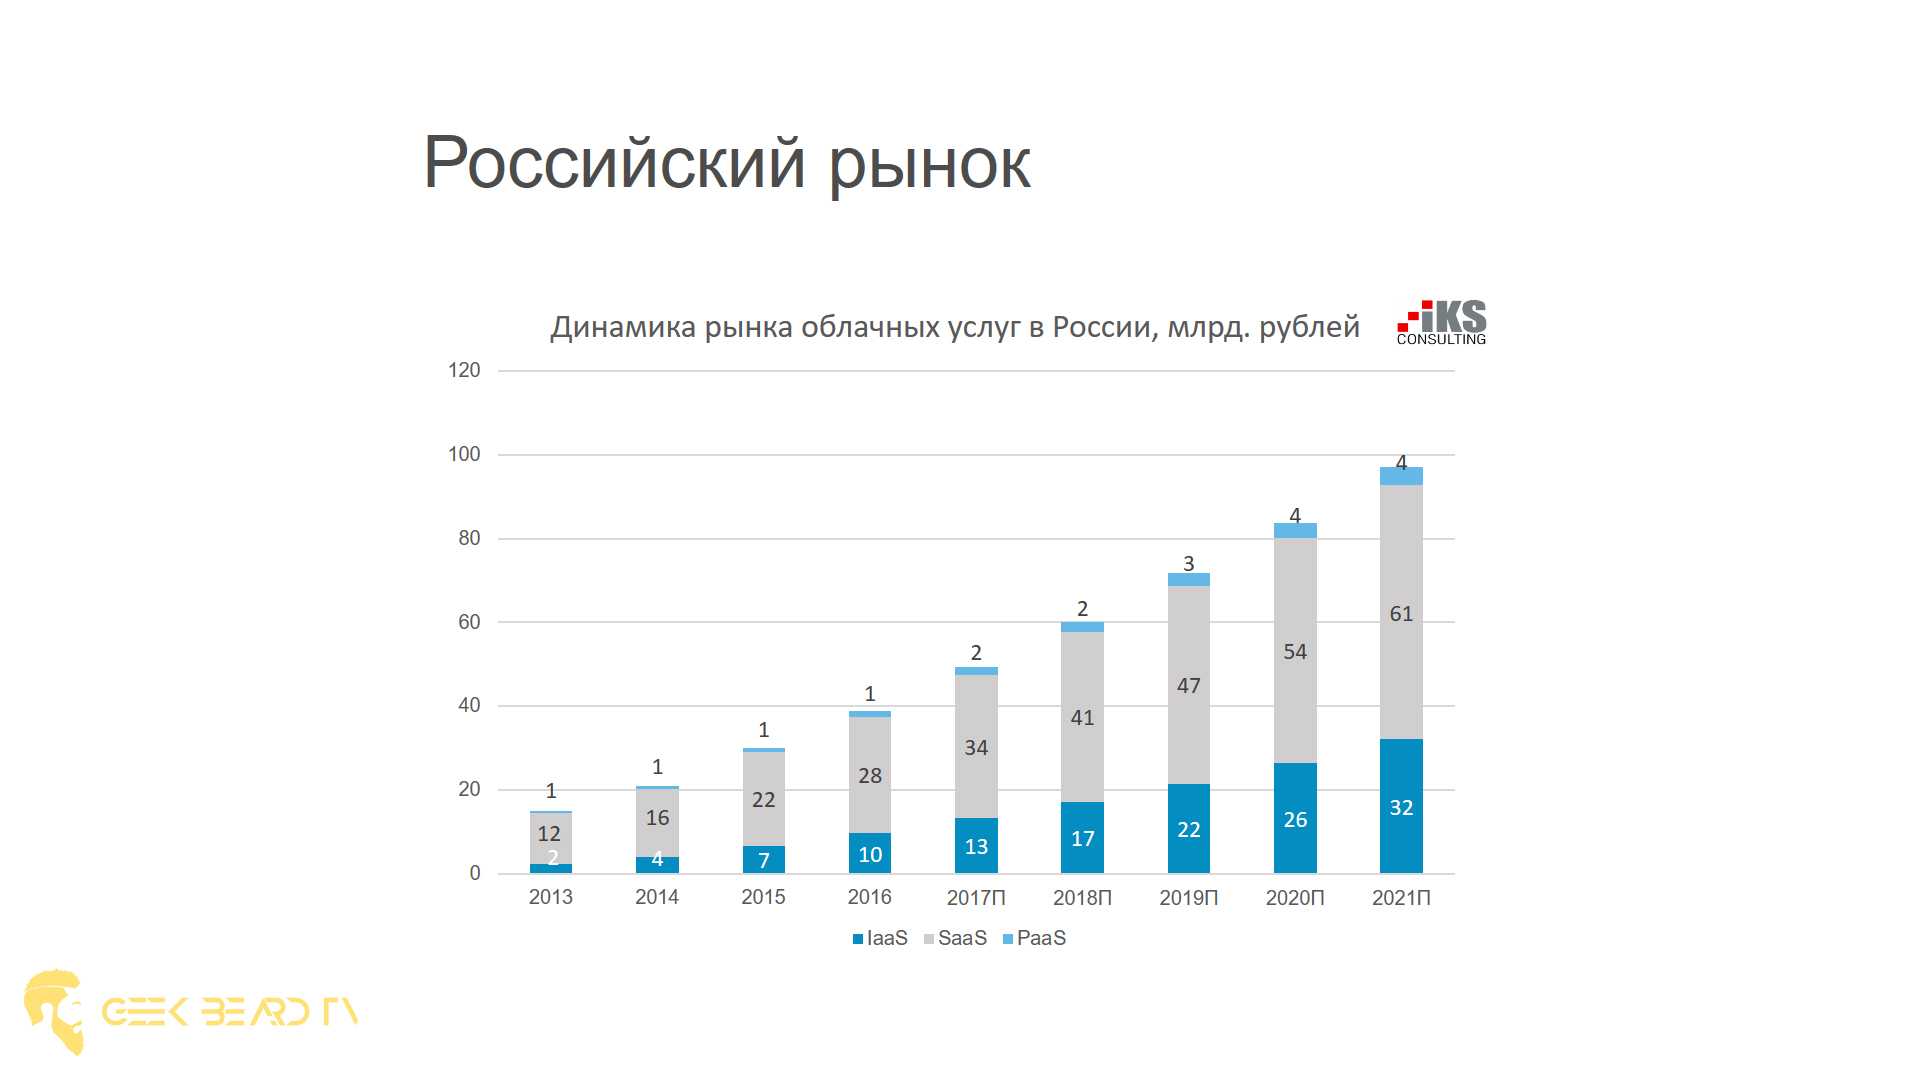 Рынок облачных услуг в России